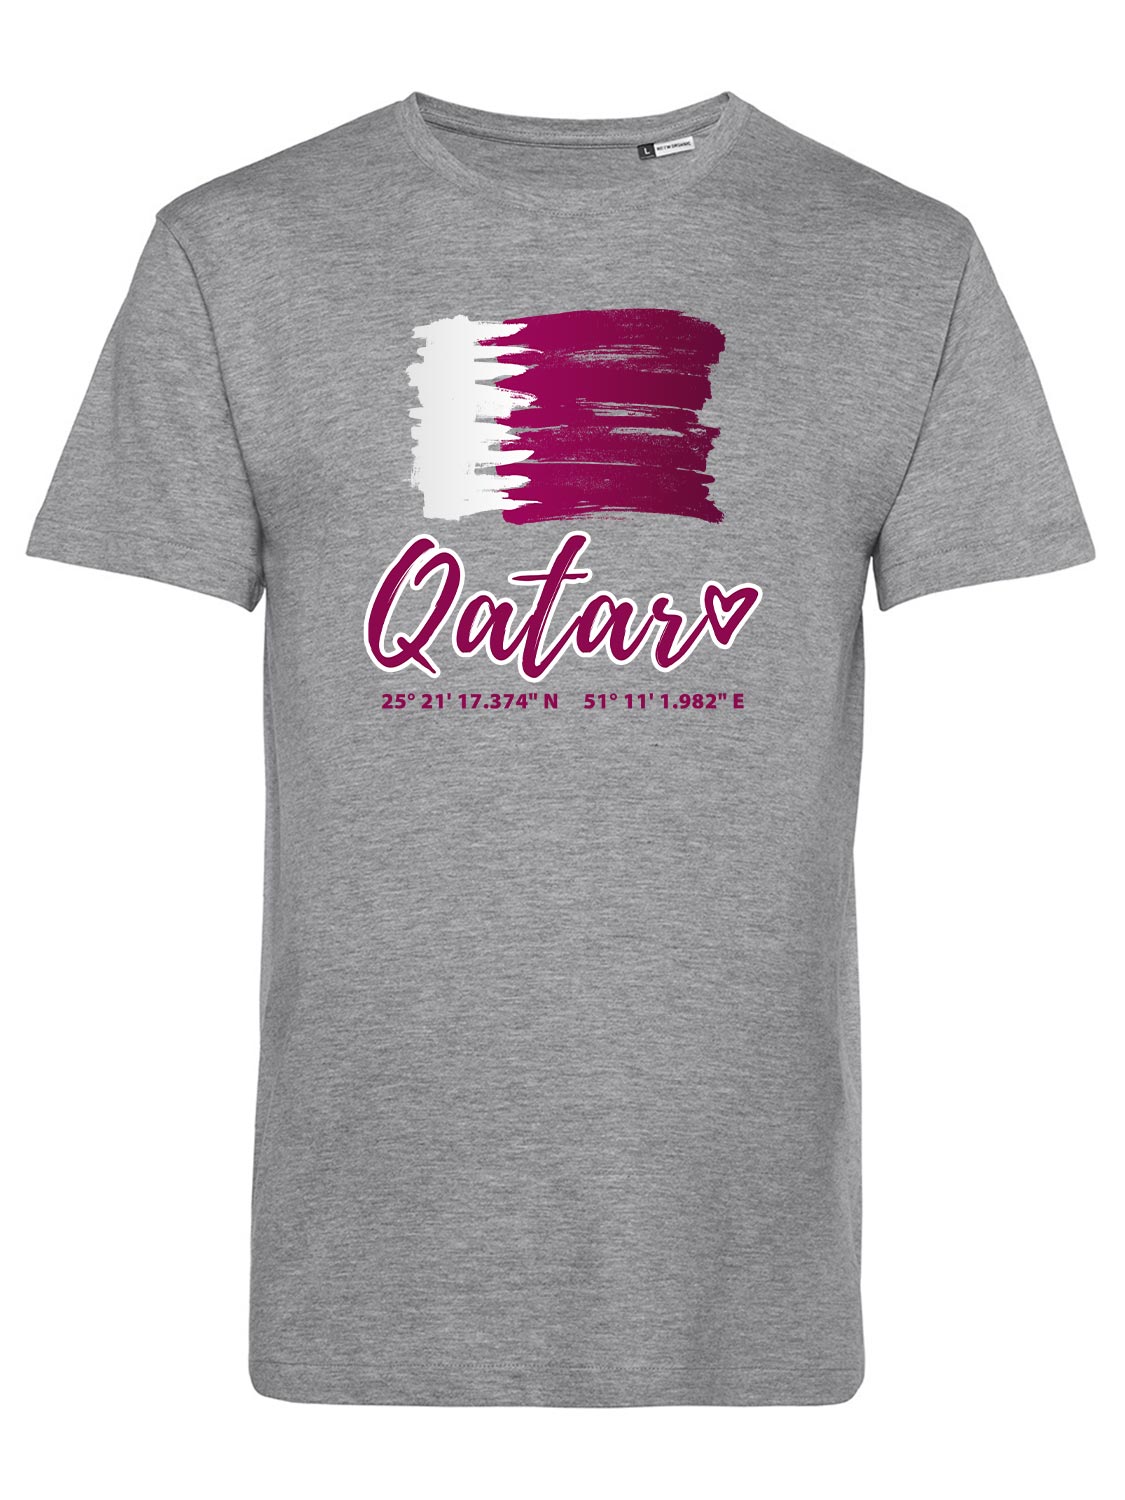 Shirt-Katar